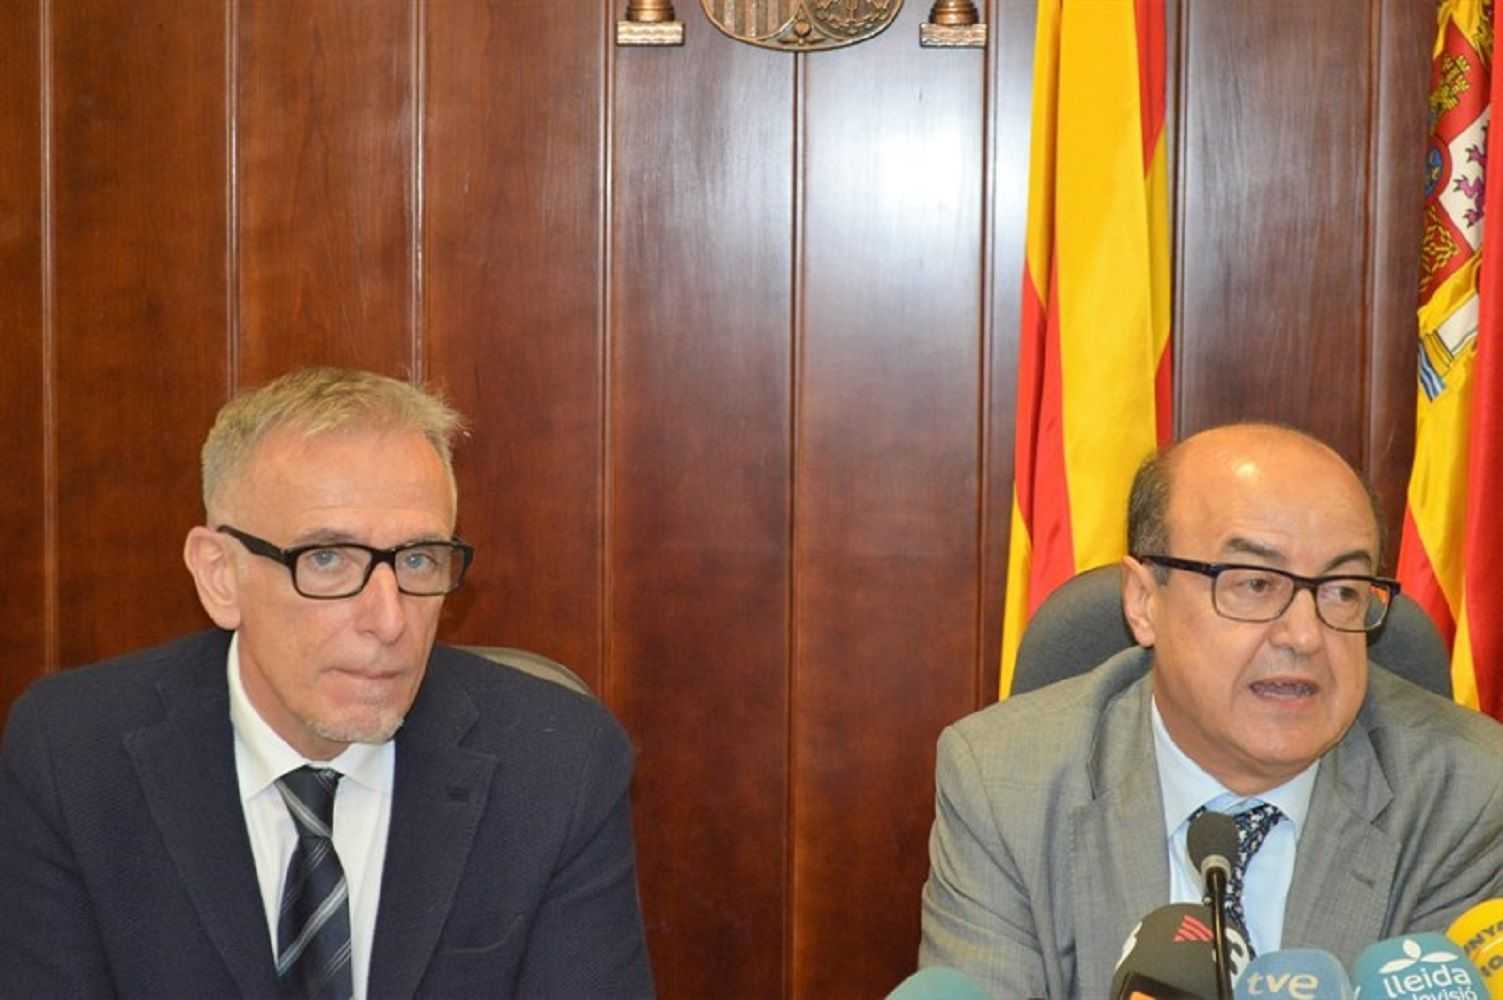 El presidente de la Audiència de Lleida contradice al presidente del TSJC en el tema del catalàn